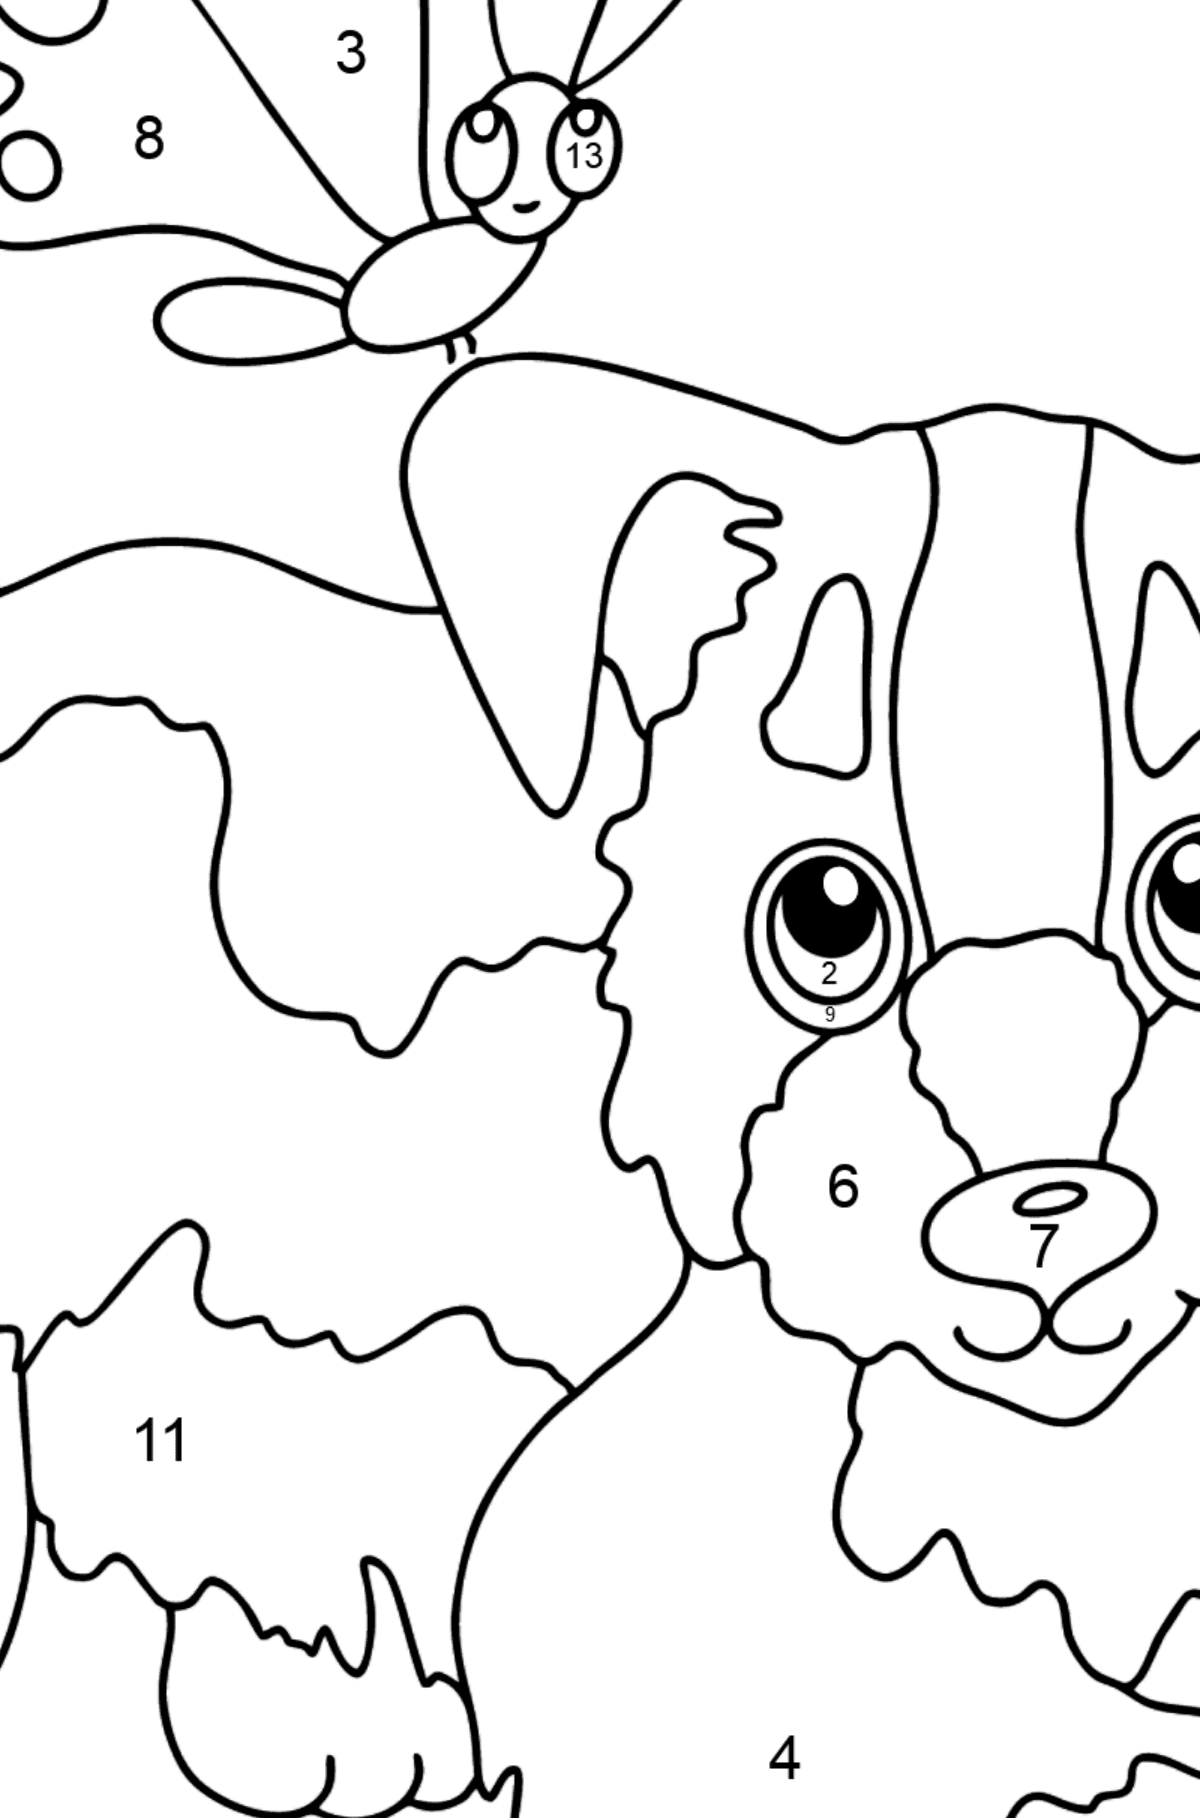 Dibujo para Colorear - Un Perro Jugando con una Hermosa Mariposa - Colorear por Números para Niños